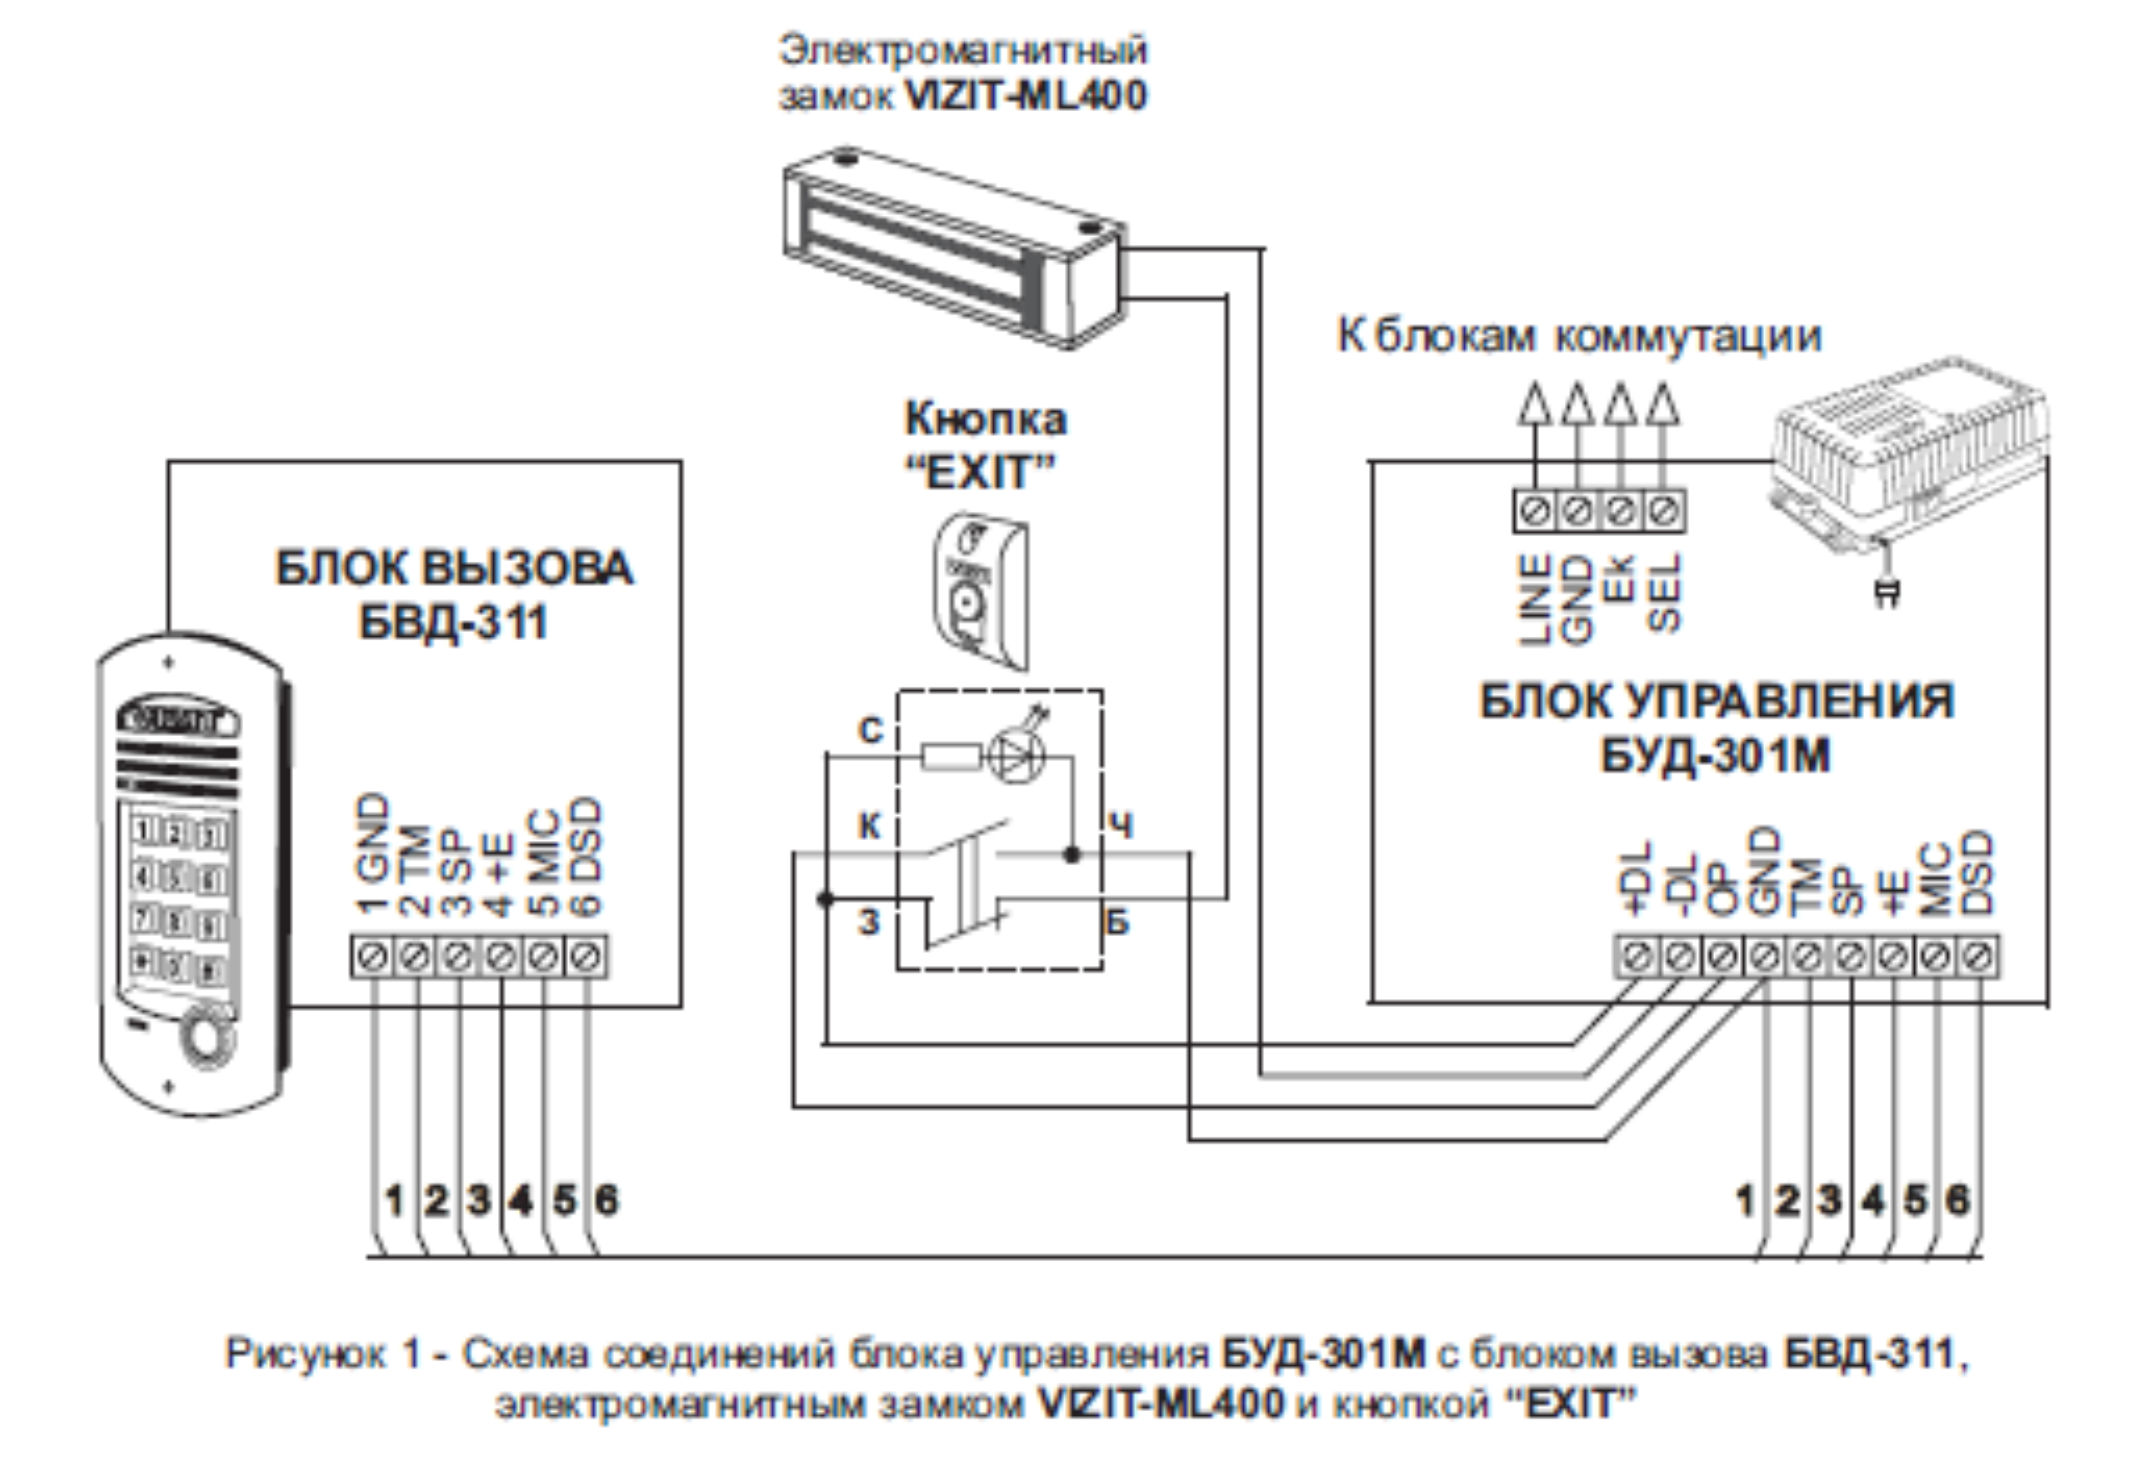 Схема соединений блока управления БУД-301М с блоком вызова БВД-311, электромагнитным замком VIZIT-ML400 и кнопкой “EXIT”